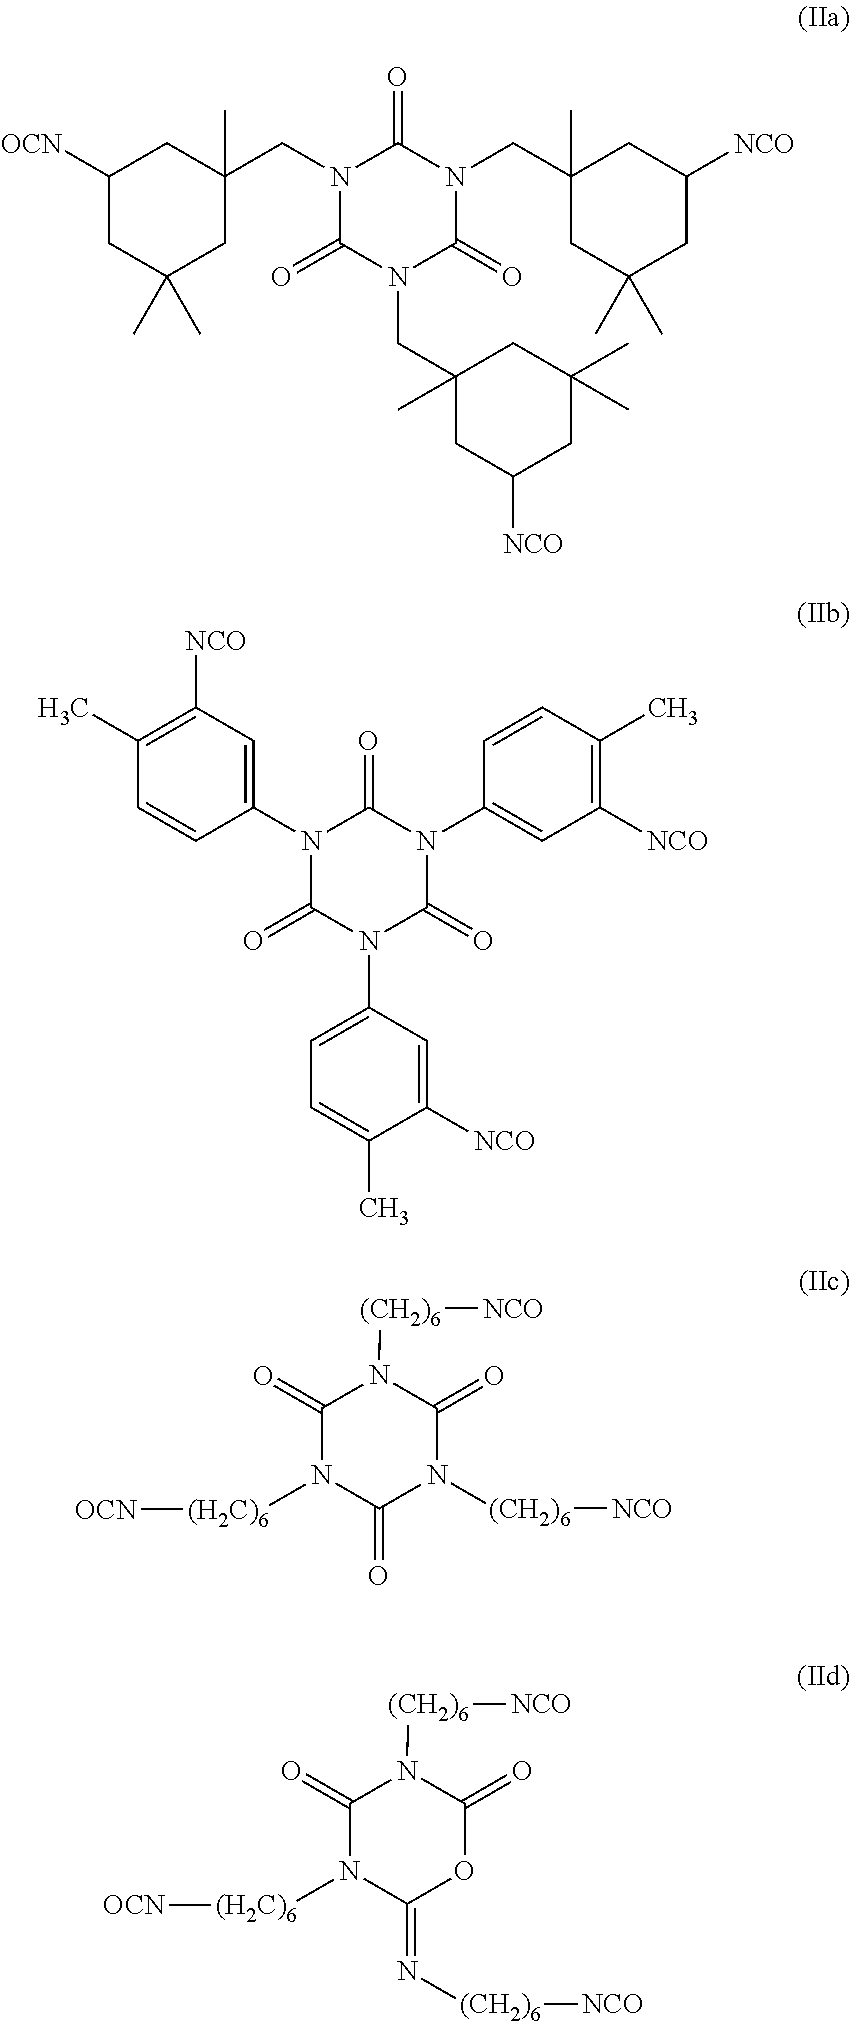 Fluorinated ethoxylated polyurethanes